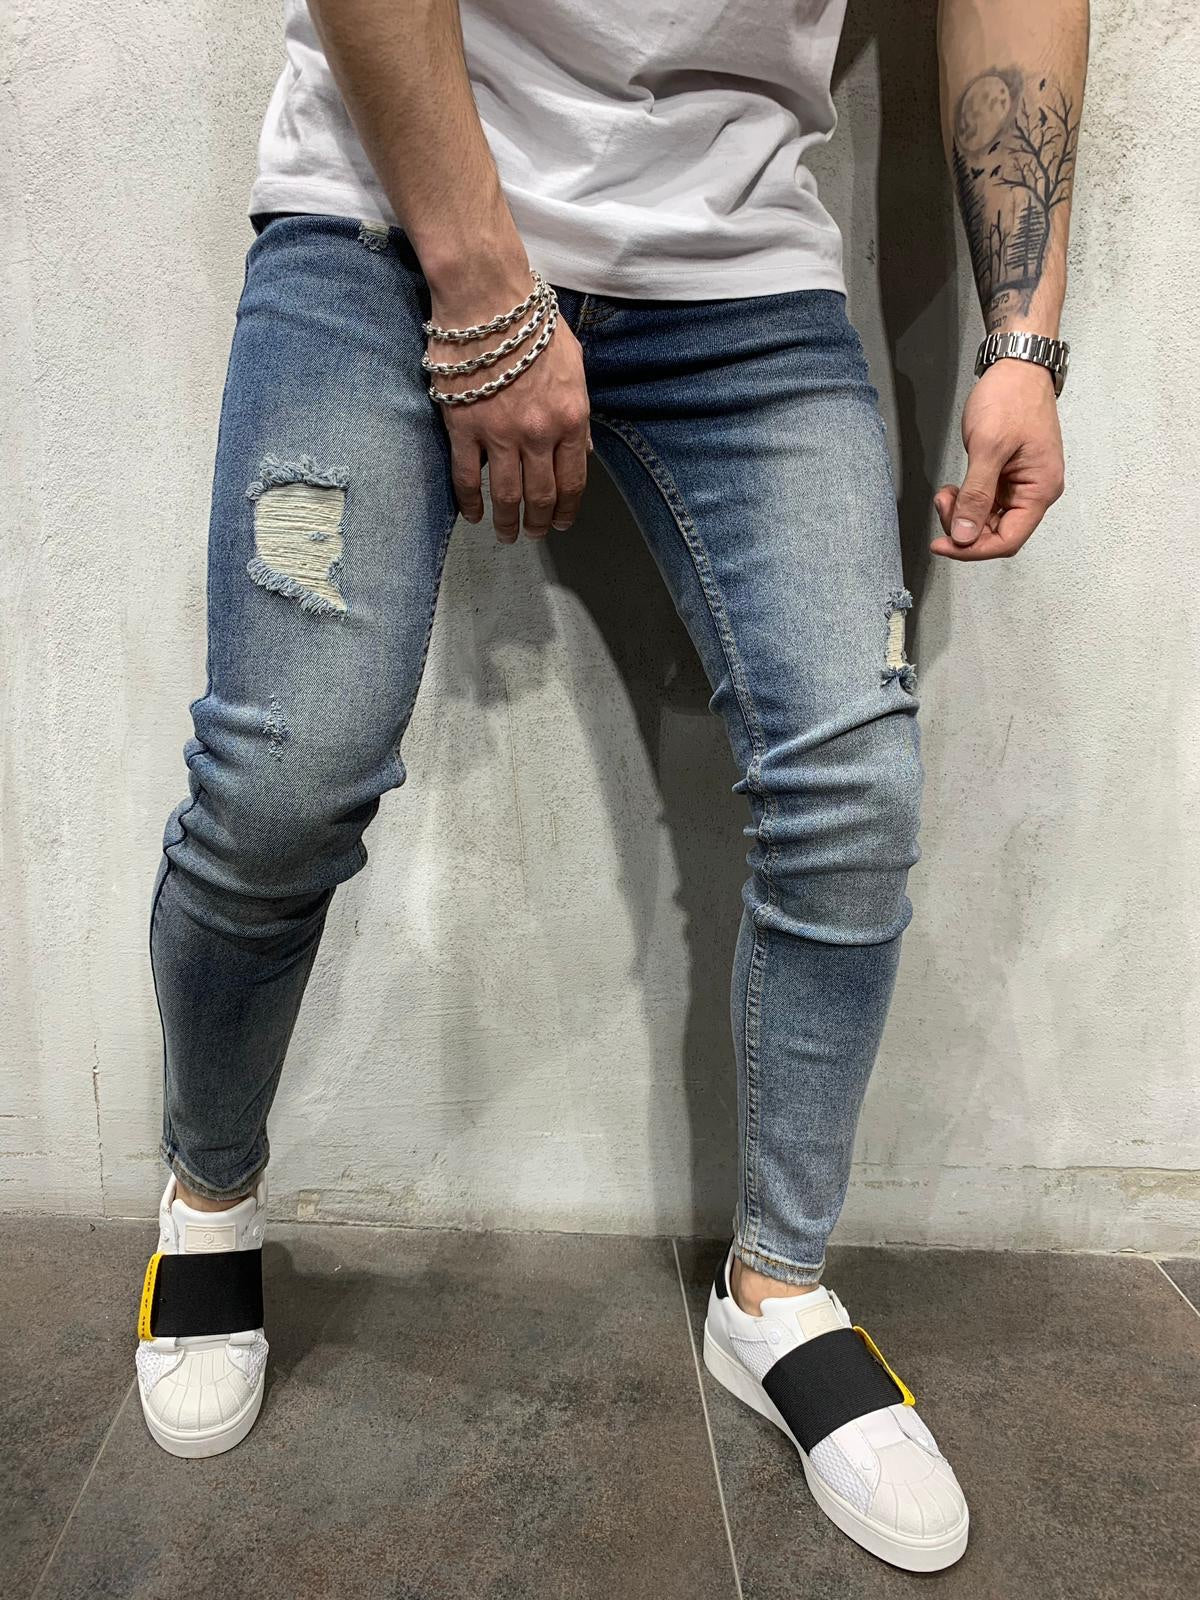 vintage denim jeans mens